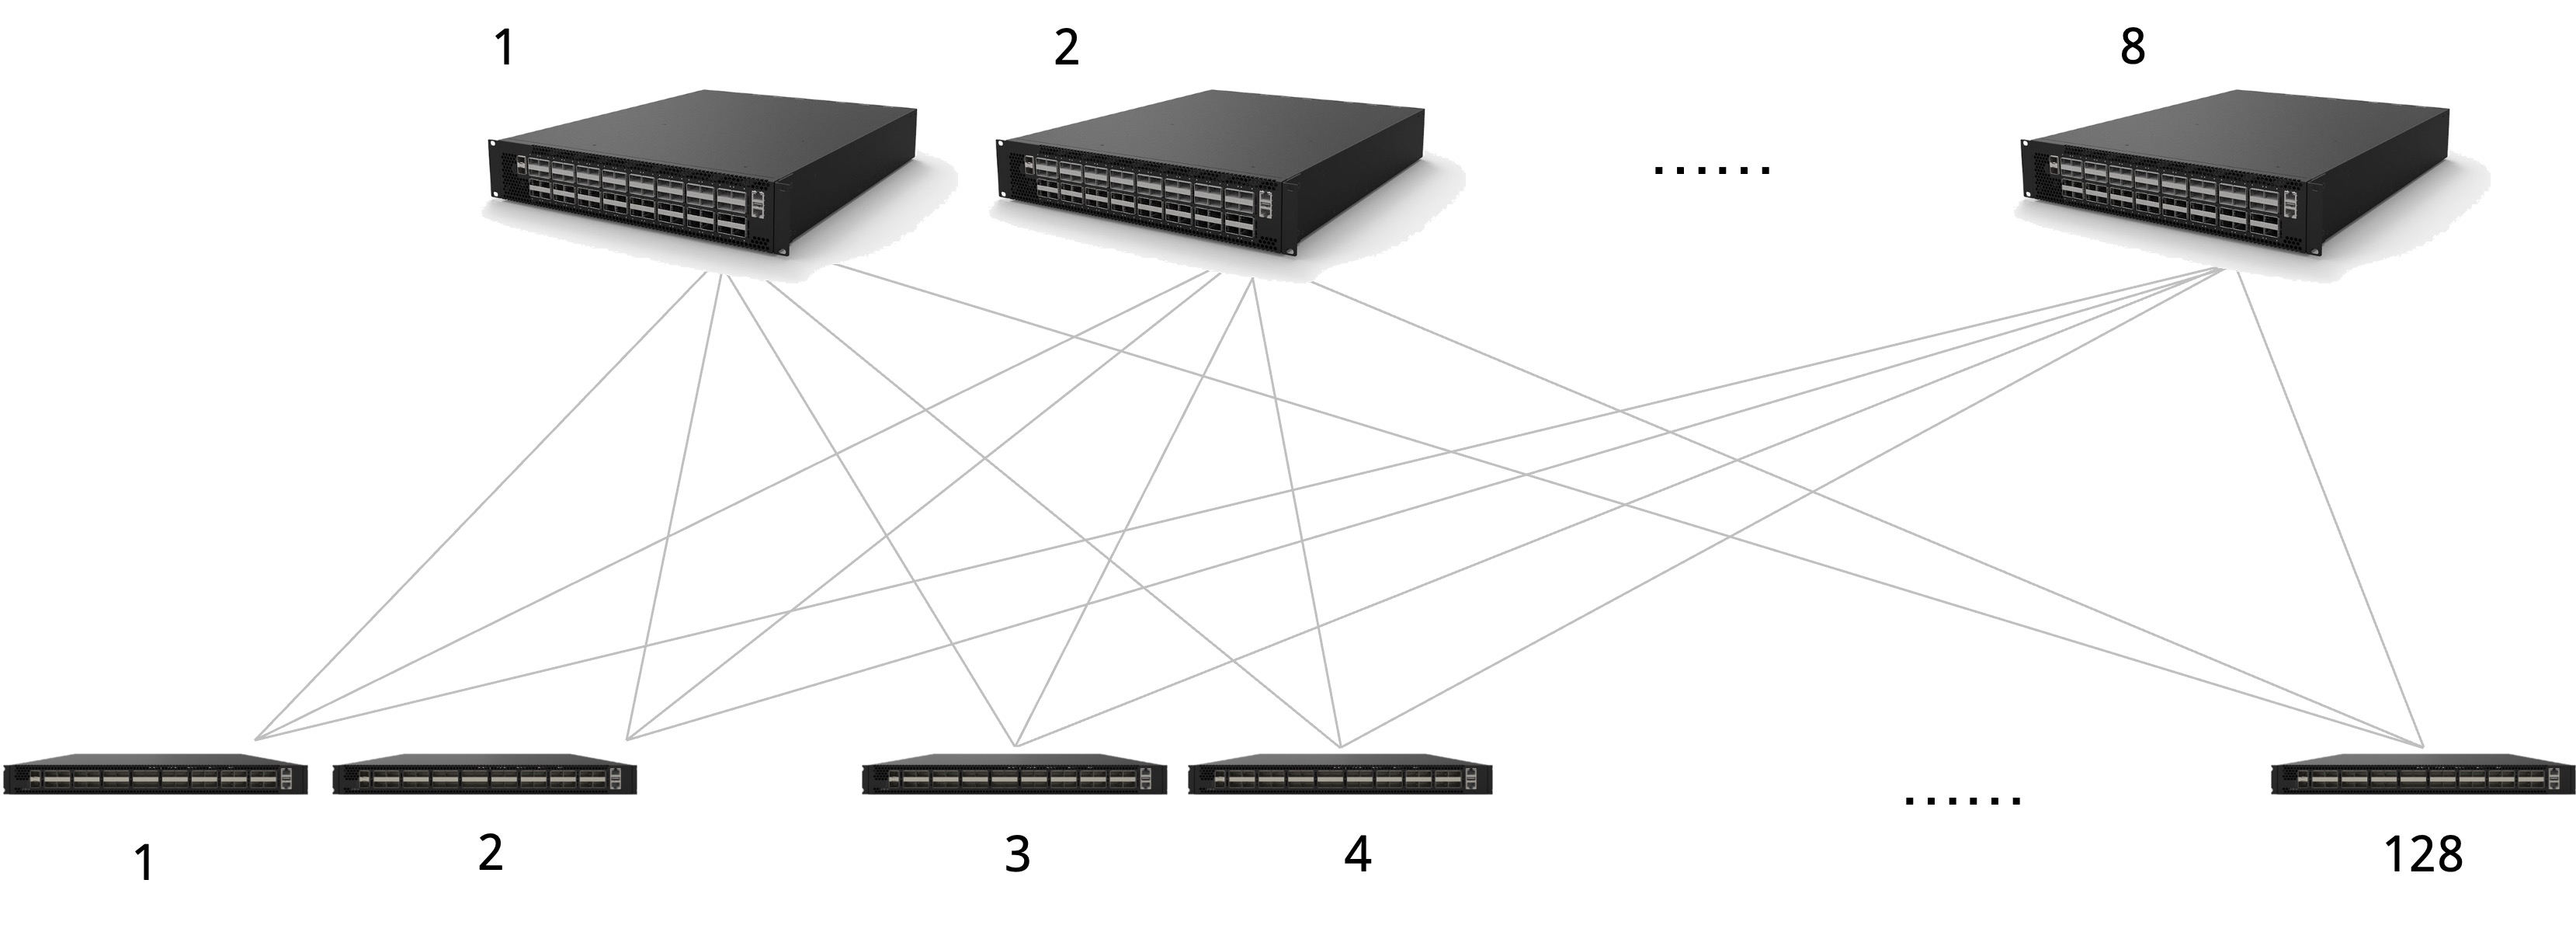 图1:    中小规模数据中心的典型组网